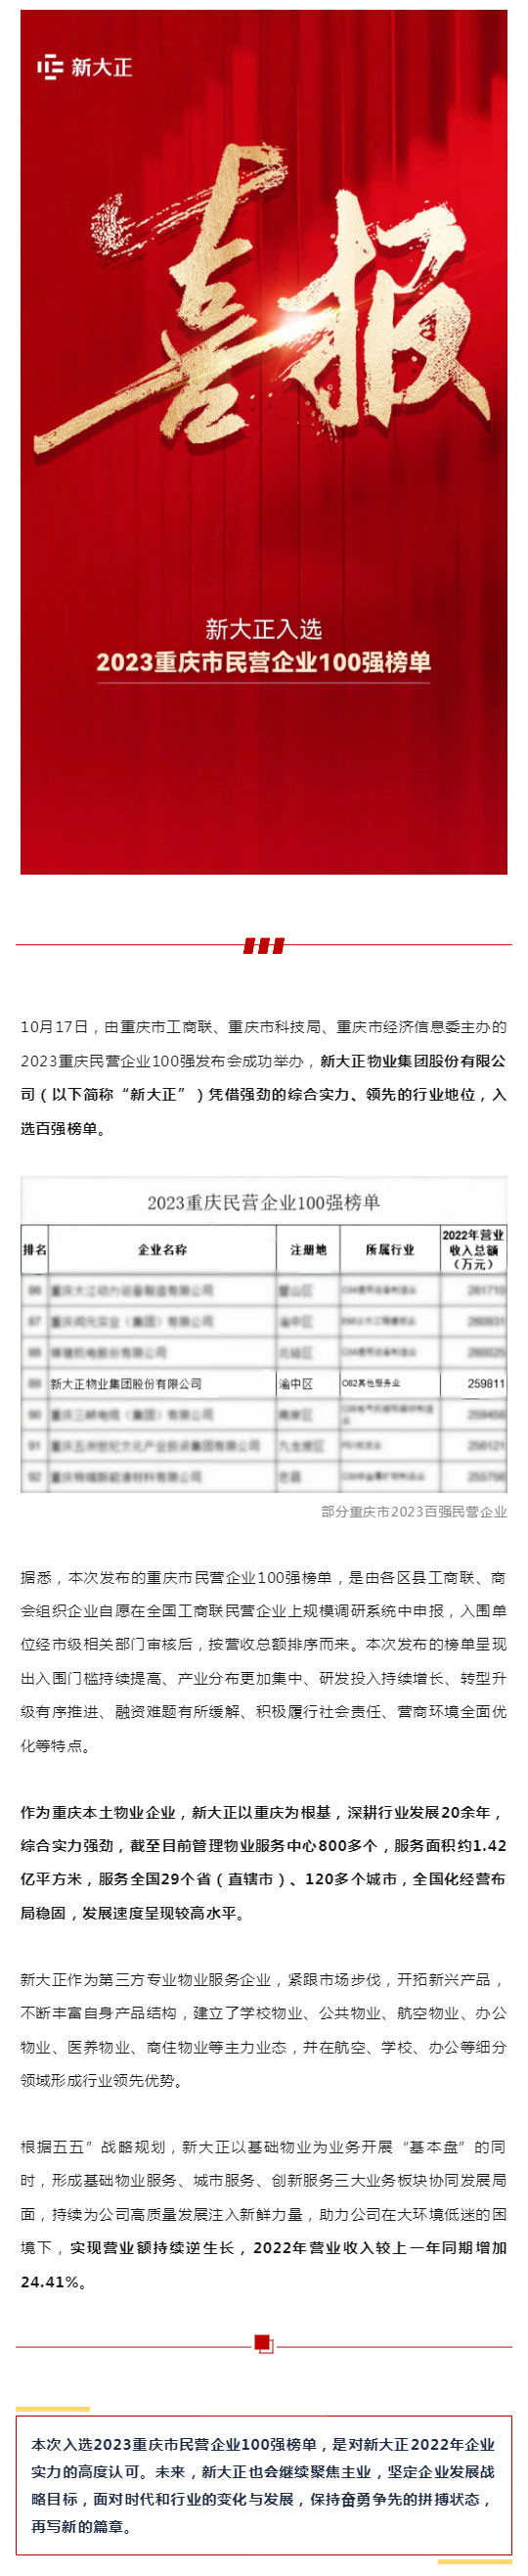 新荣誉-_-新大正入选2023重庆市民营企业100强榜单_壹伴长图1.jpg